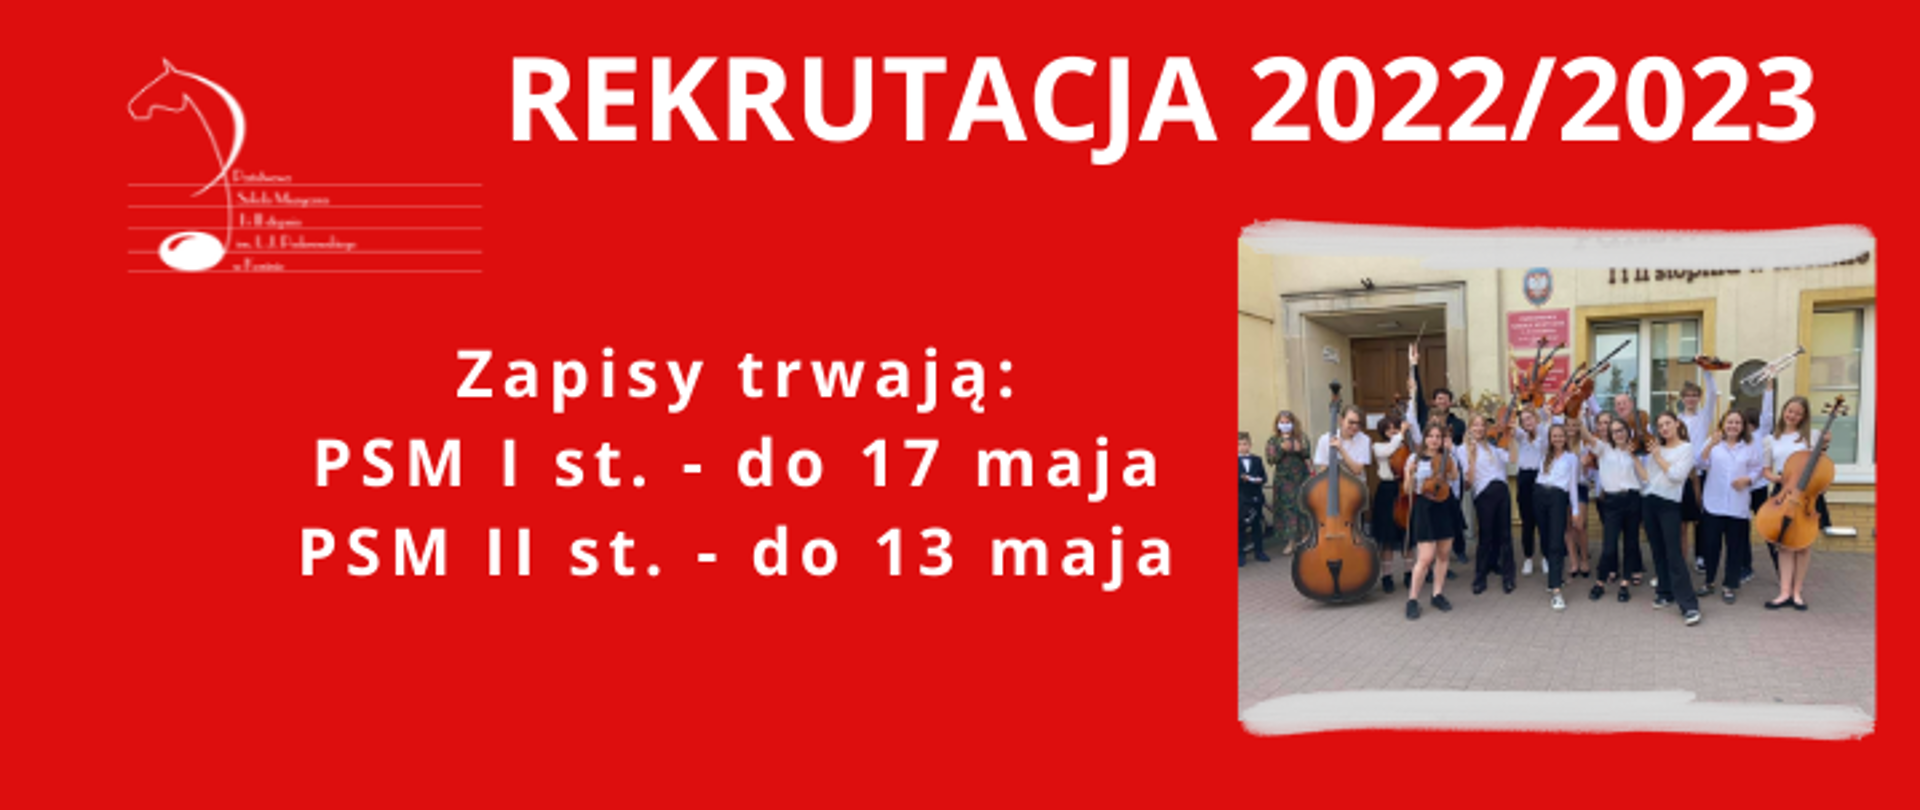 Plakat przedstawiający informacje na temat rekrutacji do PSM w Koninie na rok szkolny 2022/2023, na czerwonym tle zdjęcie orkiesty szkolnej przed budynkiem szkoły w Koninie.